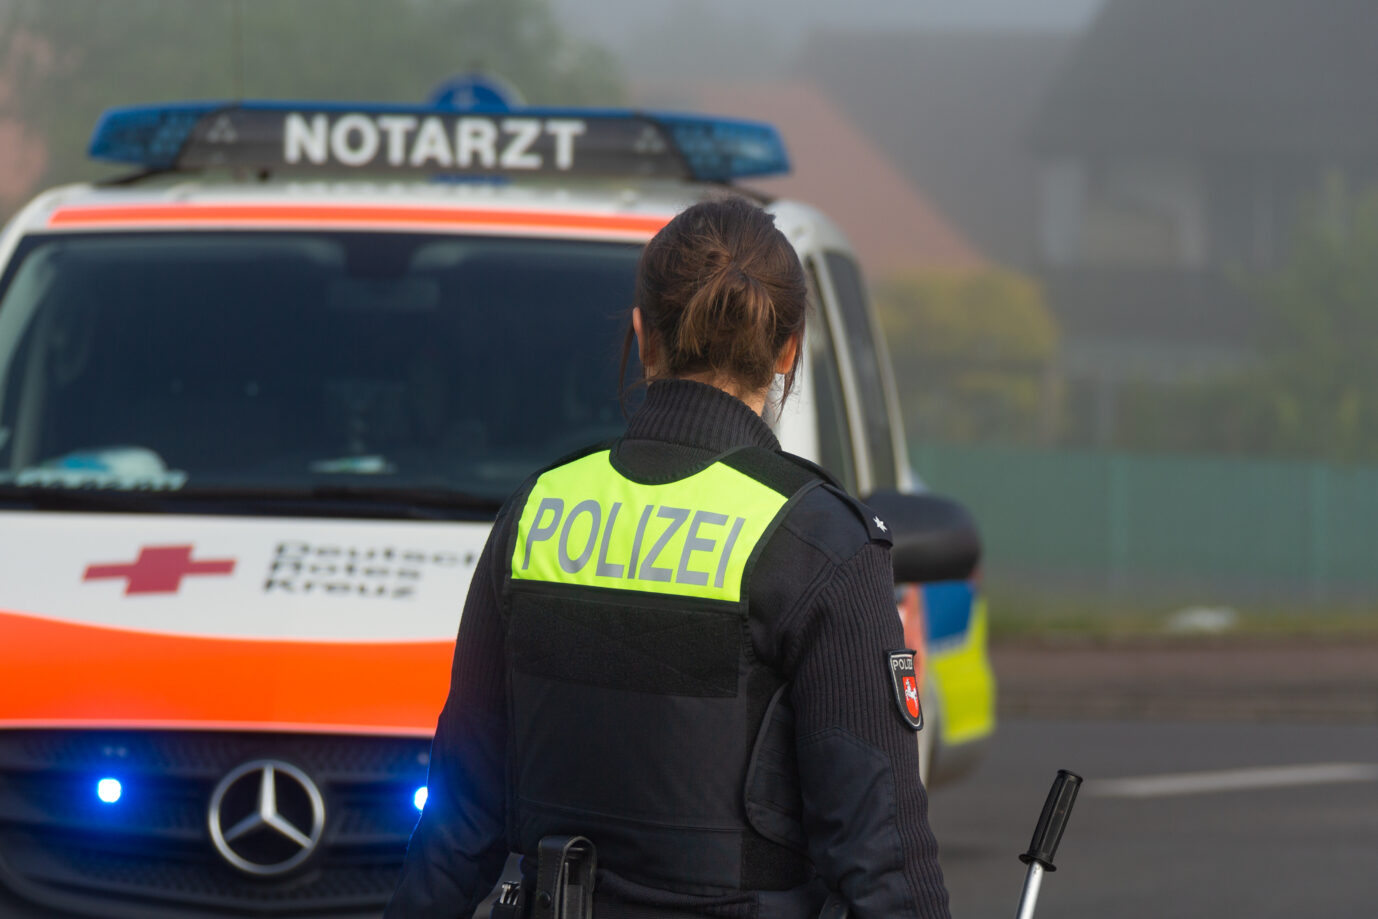 Polizei und Notarzt (Archvibild) in Niedersachsen: In Stade kostete einen Mann ein Streit in einem türkischen Restaurant das Leben